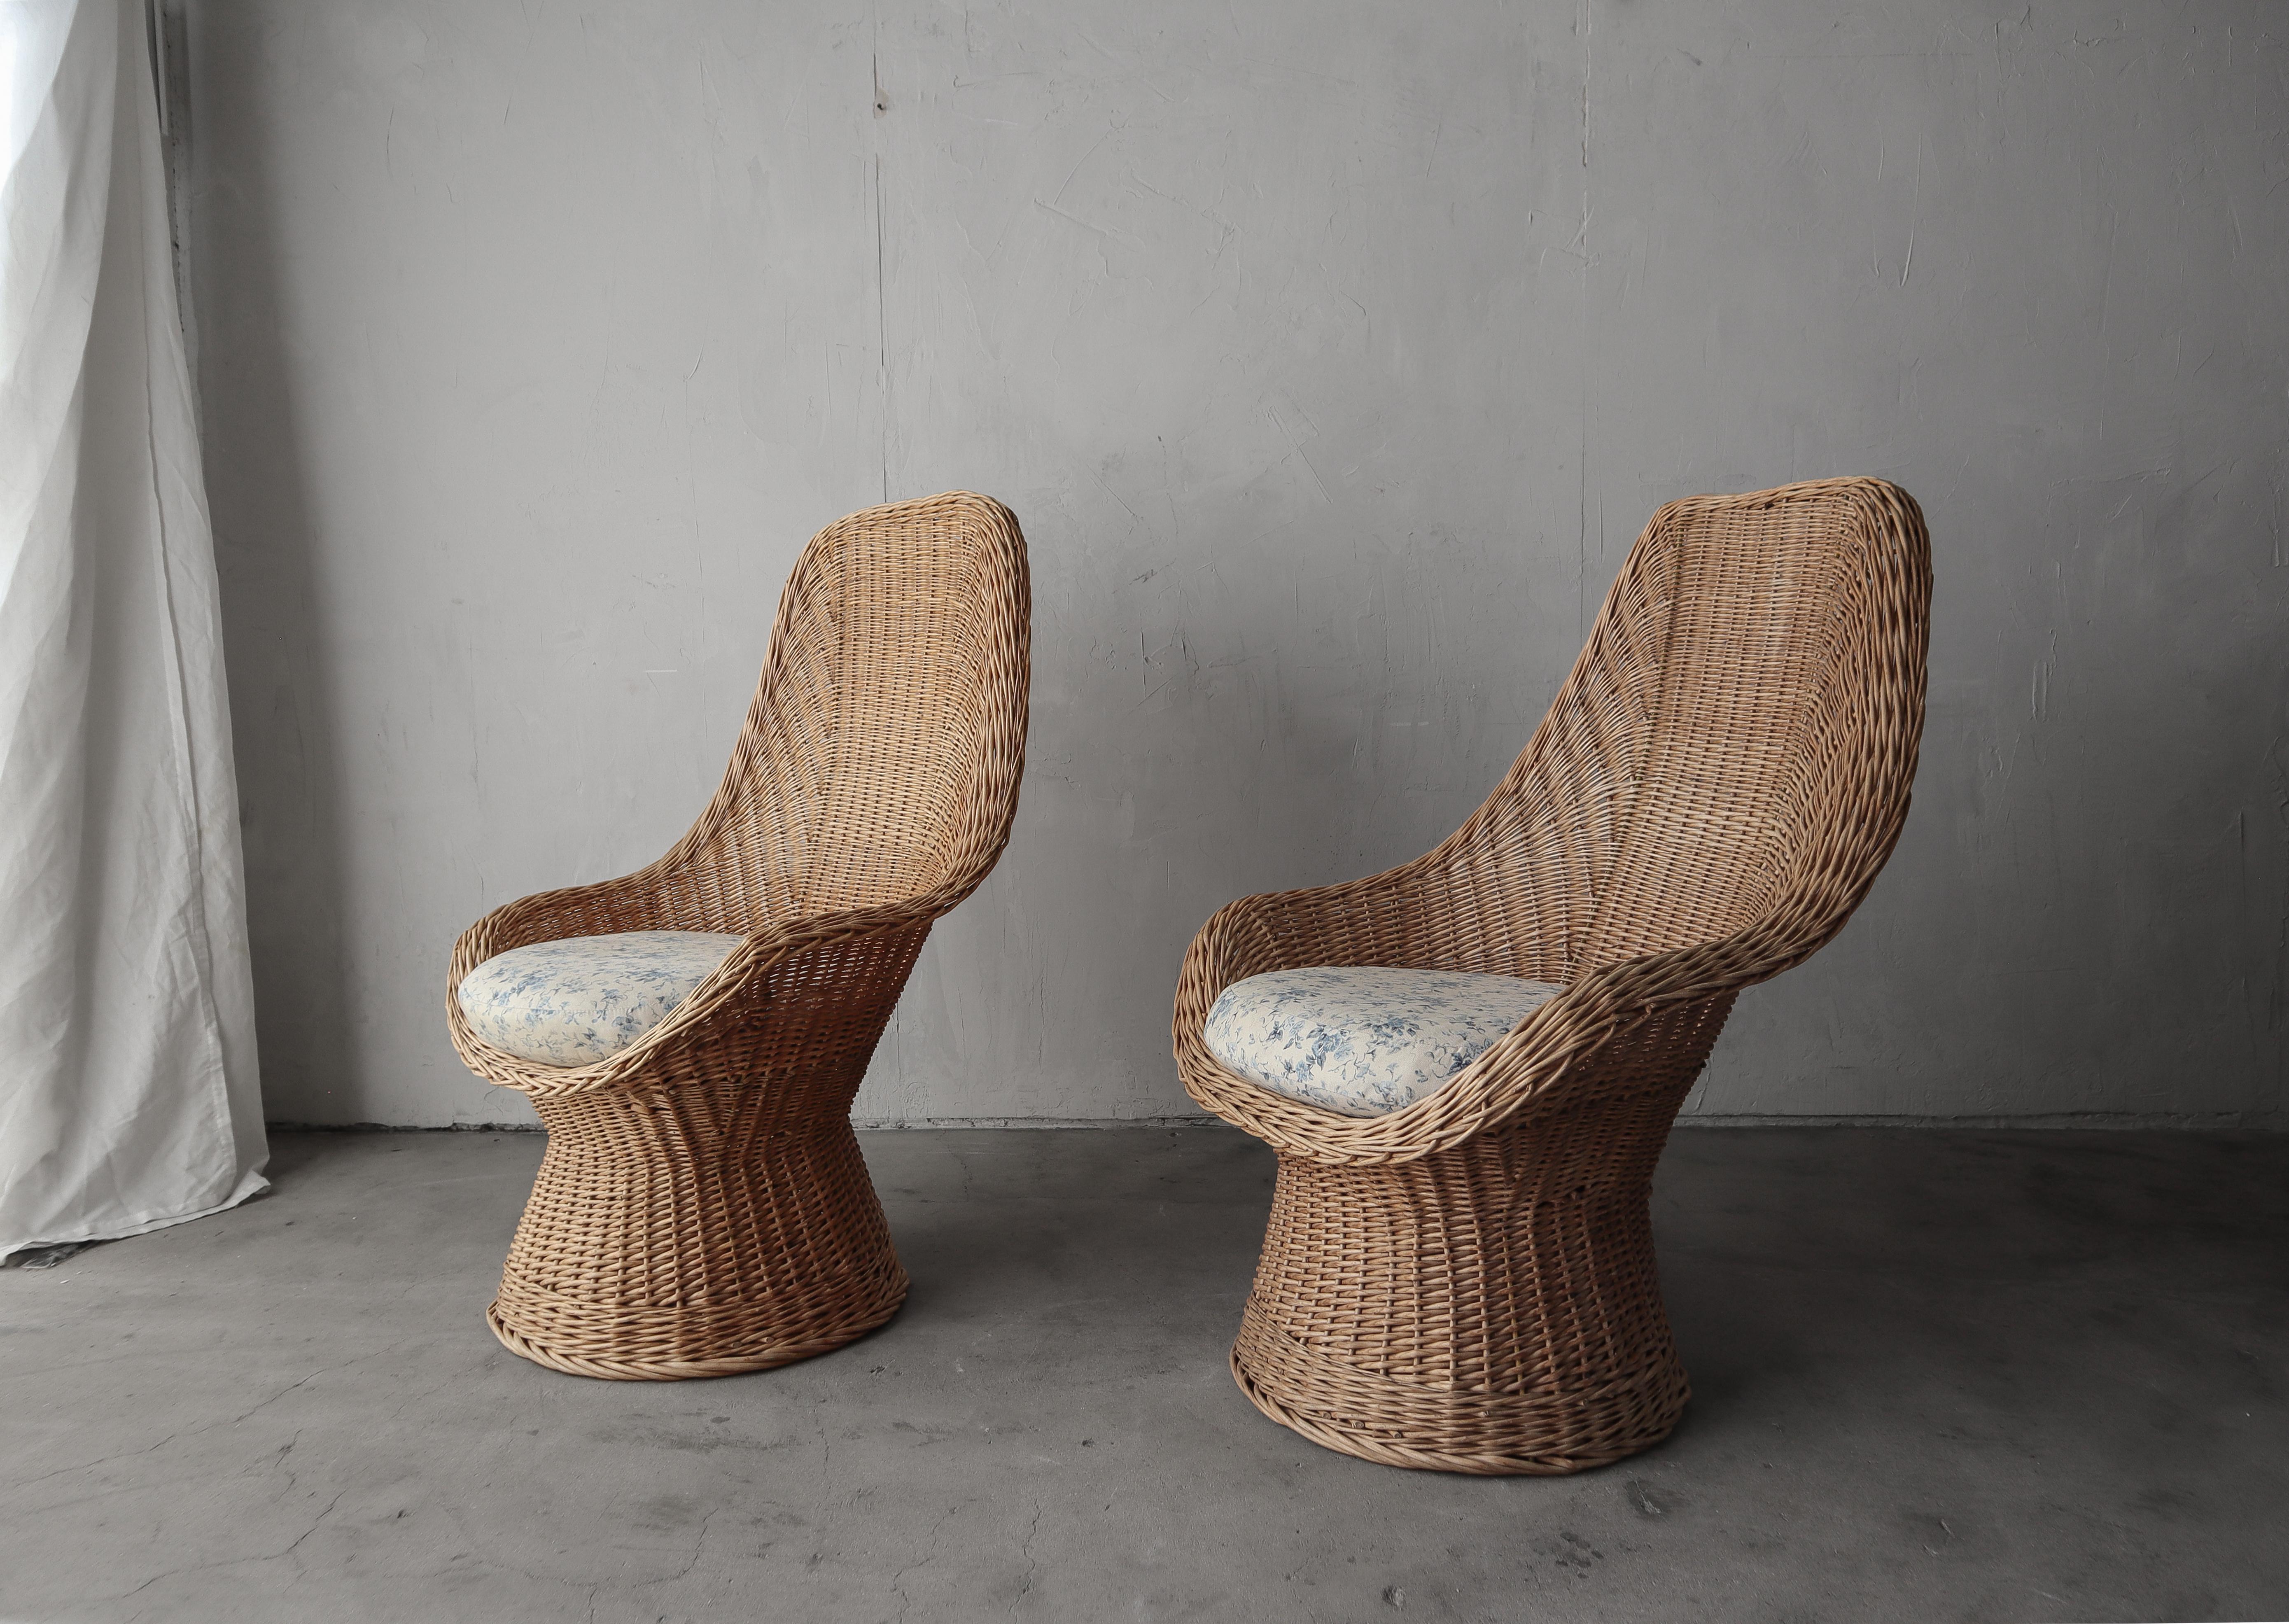 Excellente paire de chaises longues en osier polonais des années 1970.

Les chaises sont en excellent état et n'ont subi aucun dommage.  Le tissu des coussins d'assise est utilisable, mais ils seraient très jolis à refaire.



